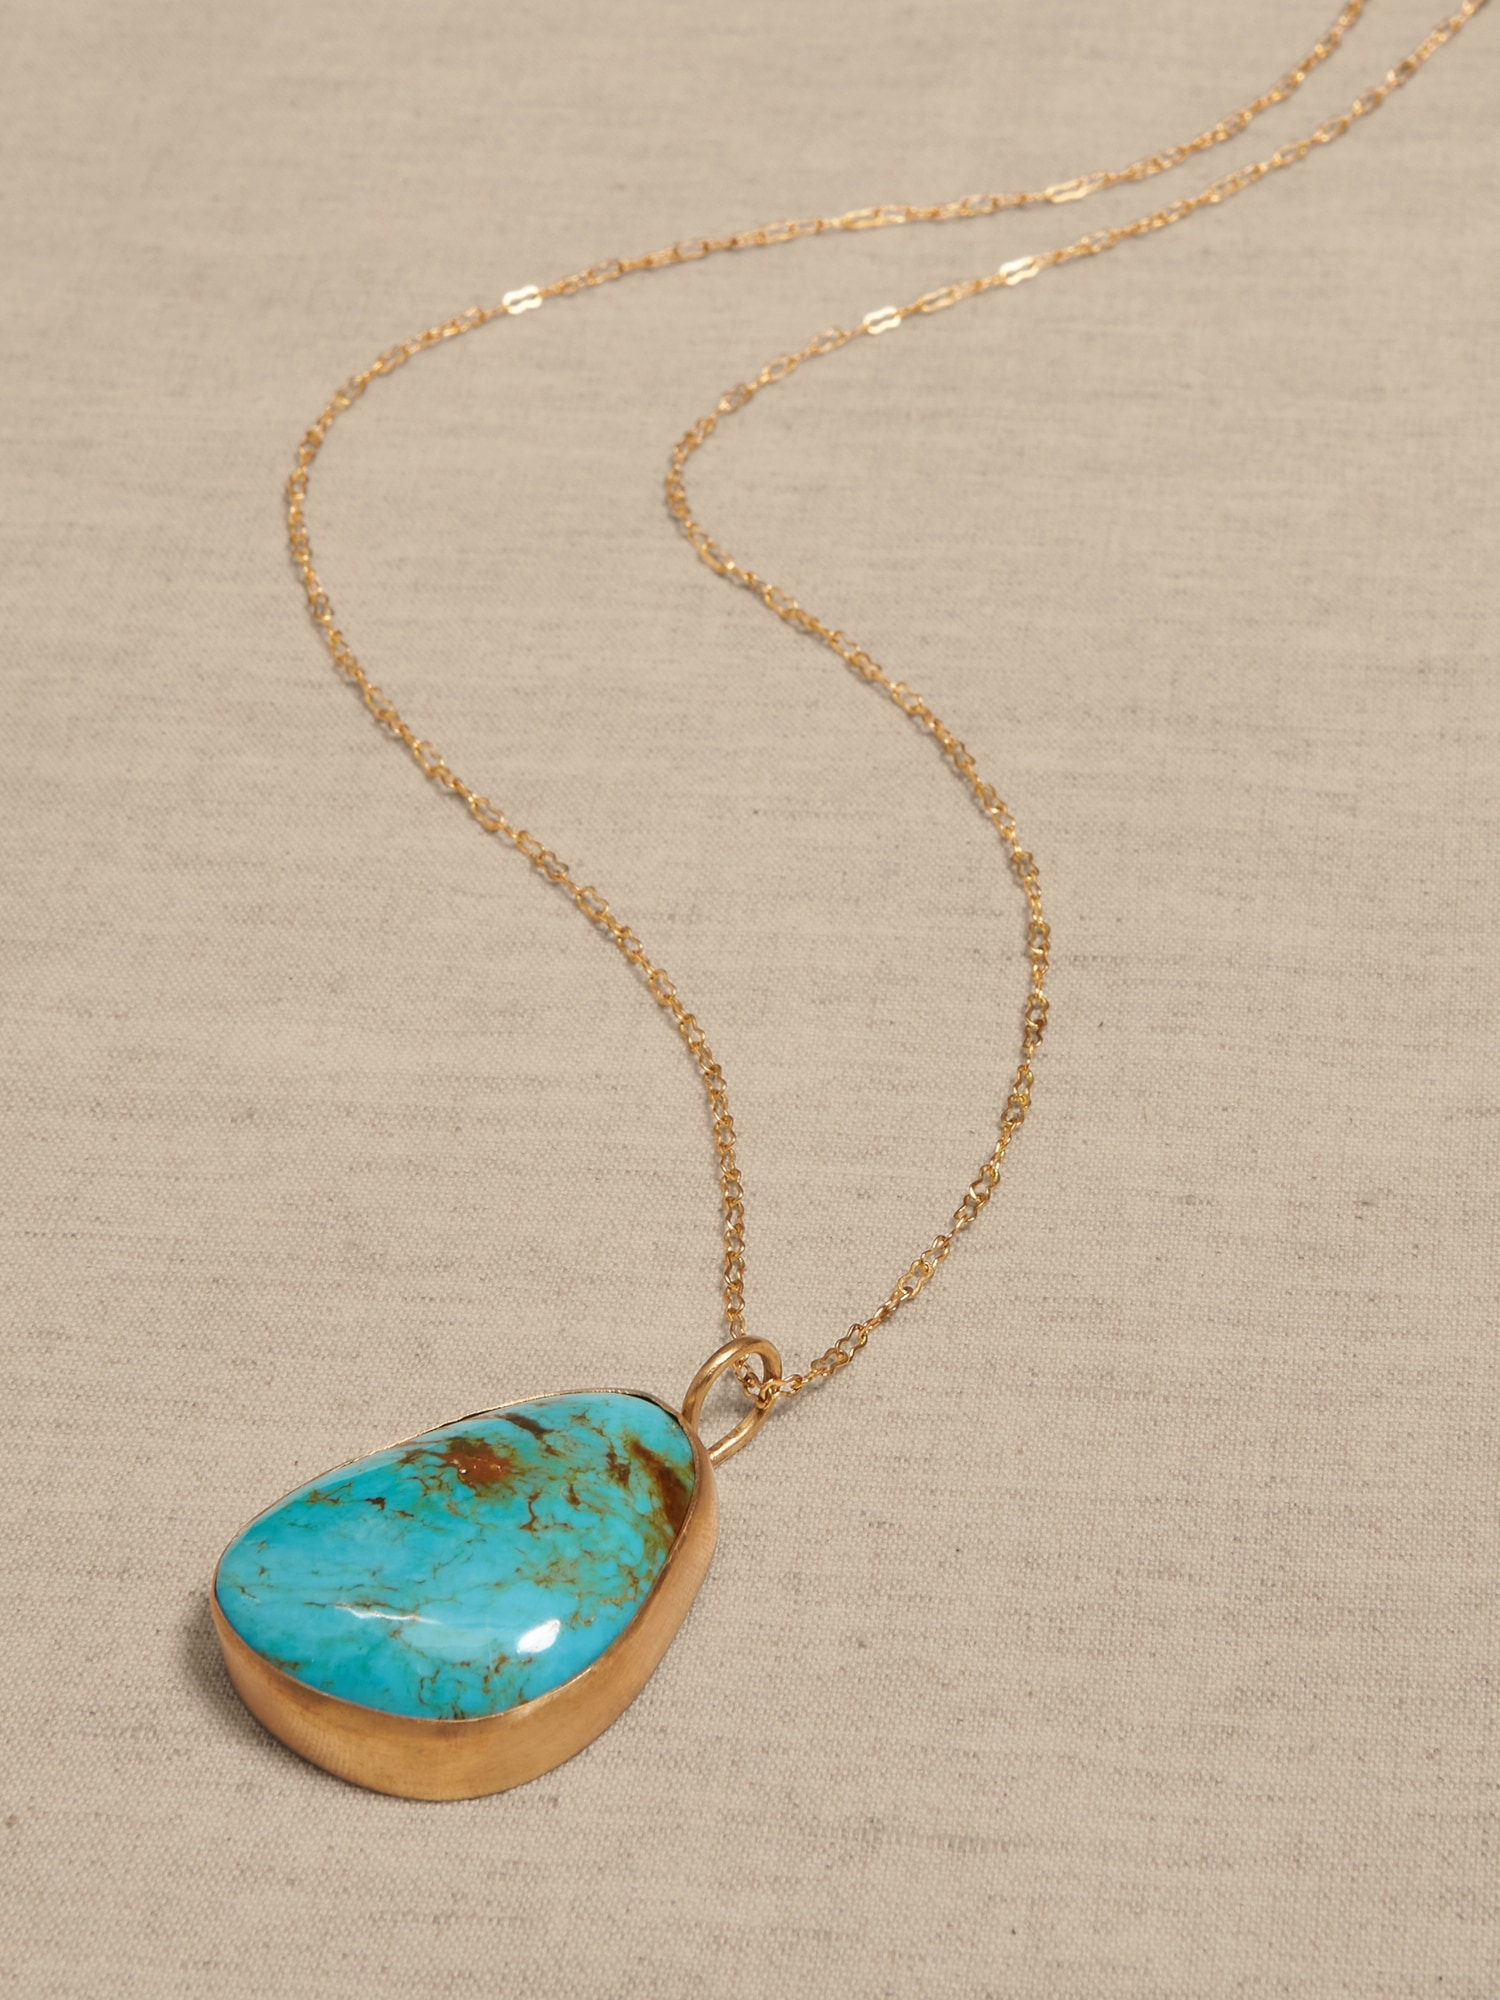 Nishapur Persian Turquoise Pendant on Nacozari Turquoise Necklace - - Ruby  Lane